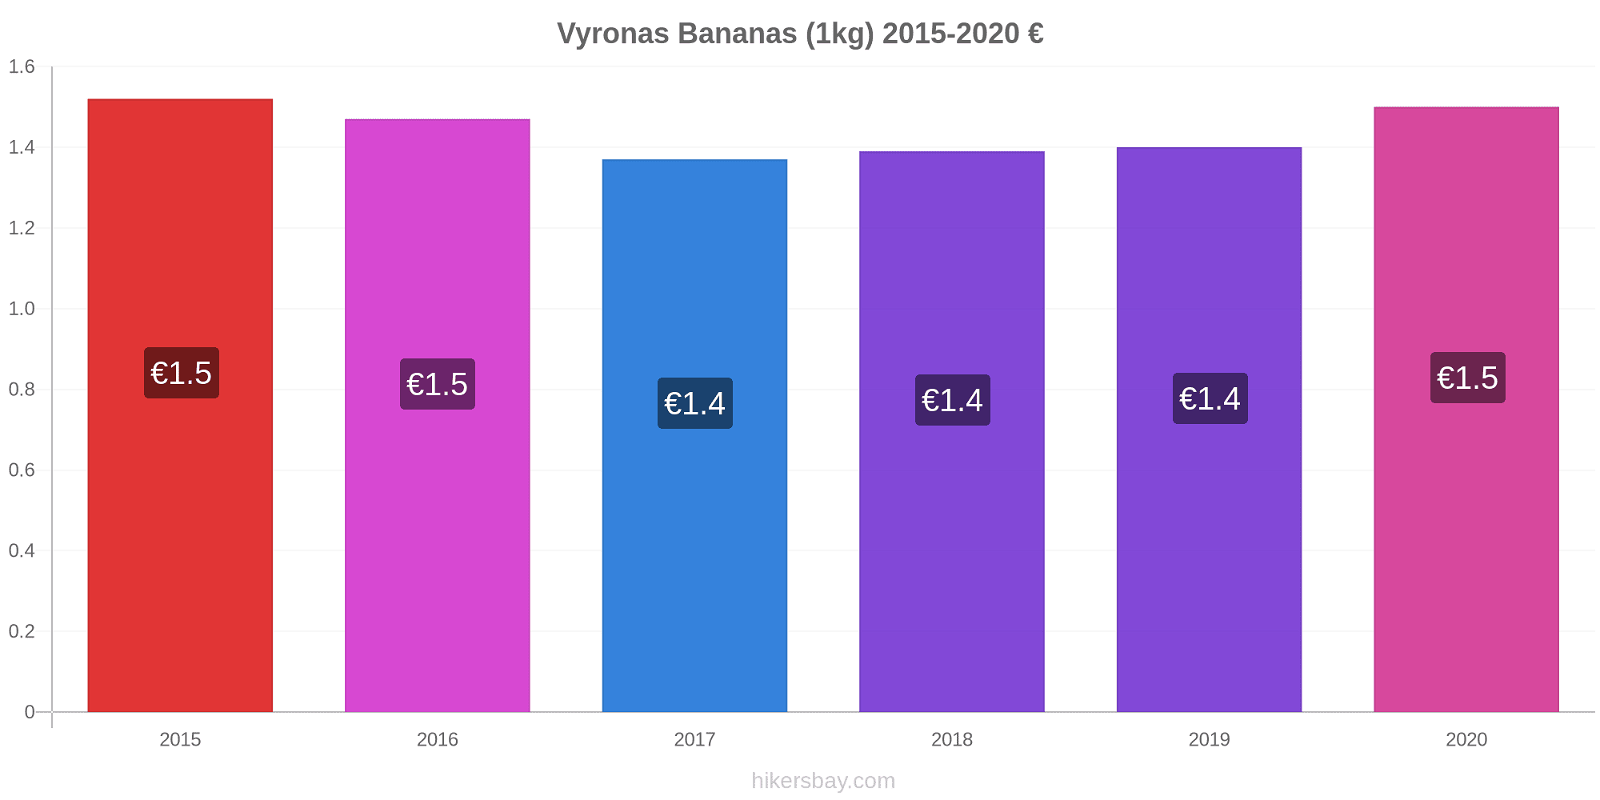 Vyronas variação de preço Banana (1kg) hikersbay.com